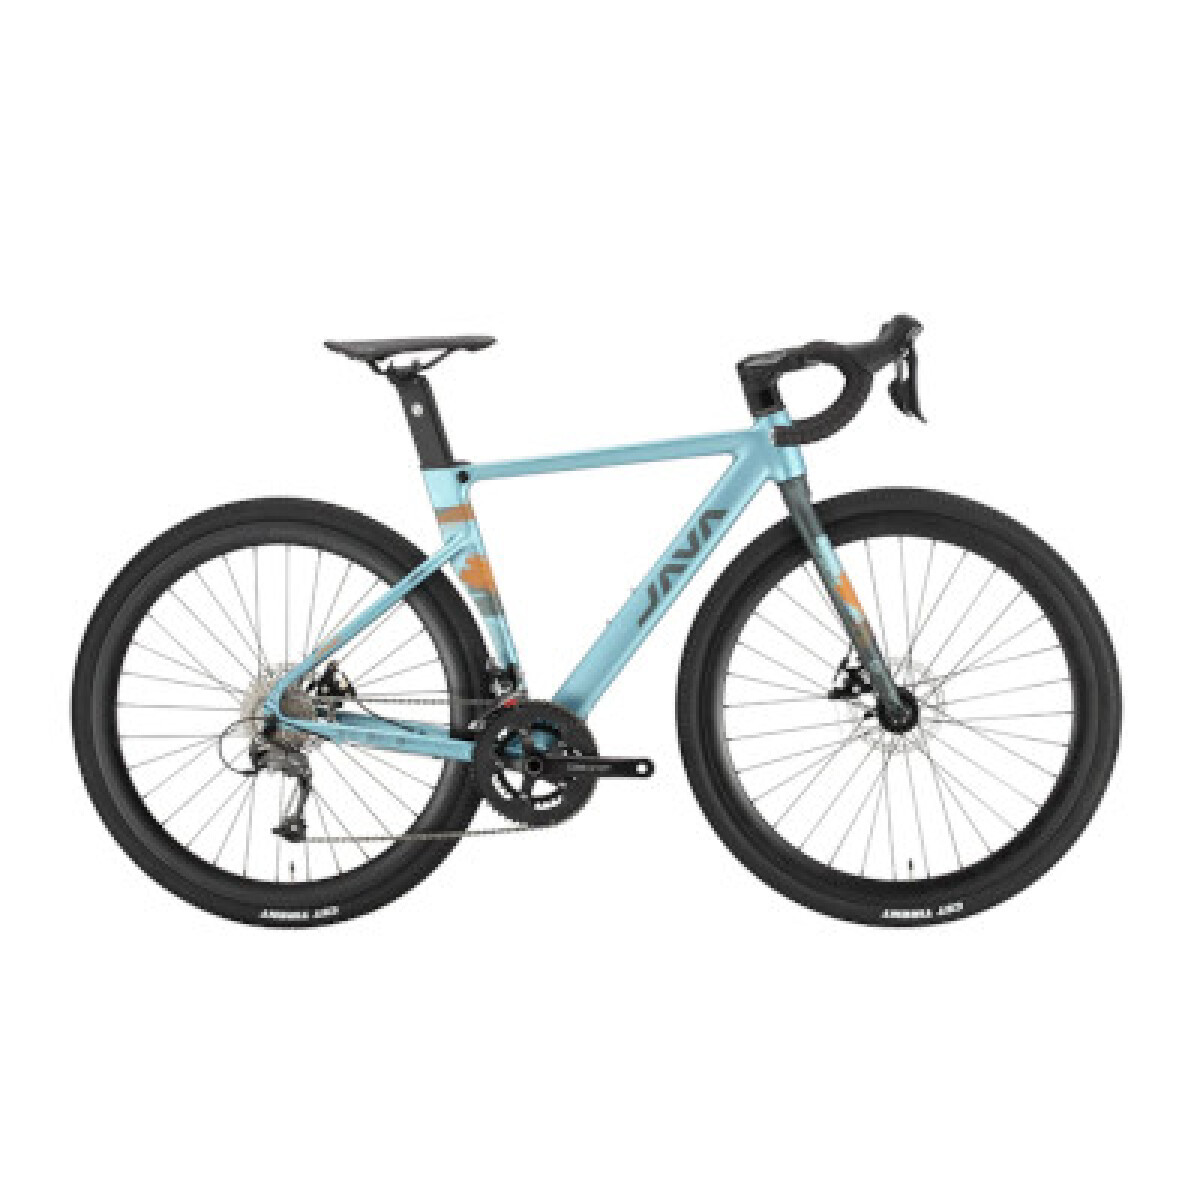 Java - Bicicleta Gravel Idra. Shimano 18V Talle 49" - Color: Azul. - 001 